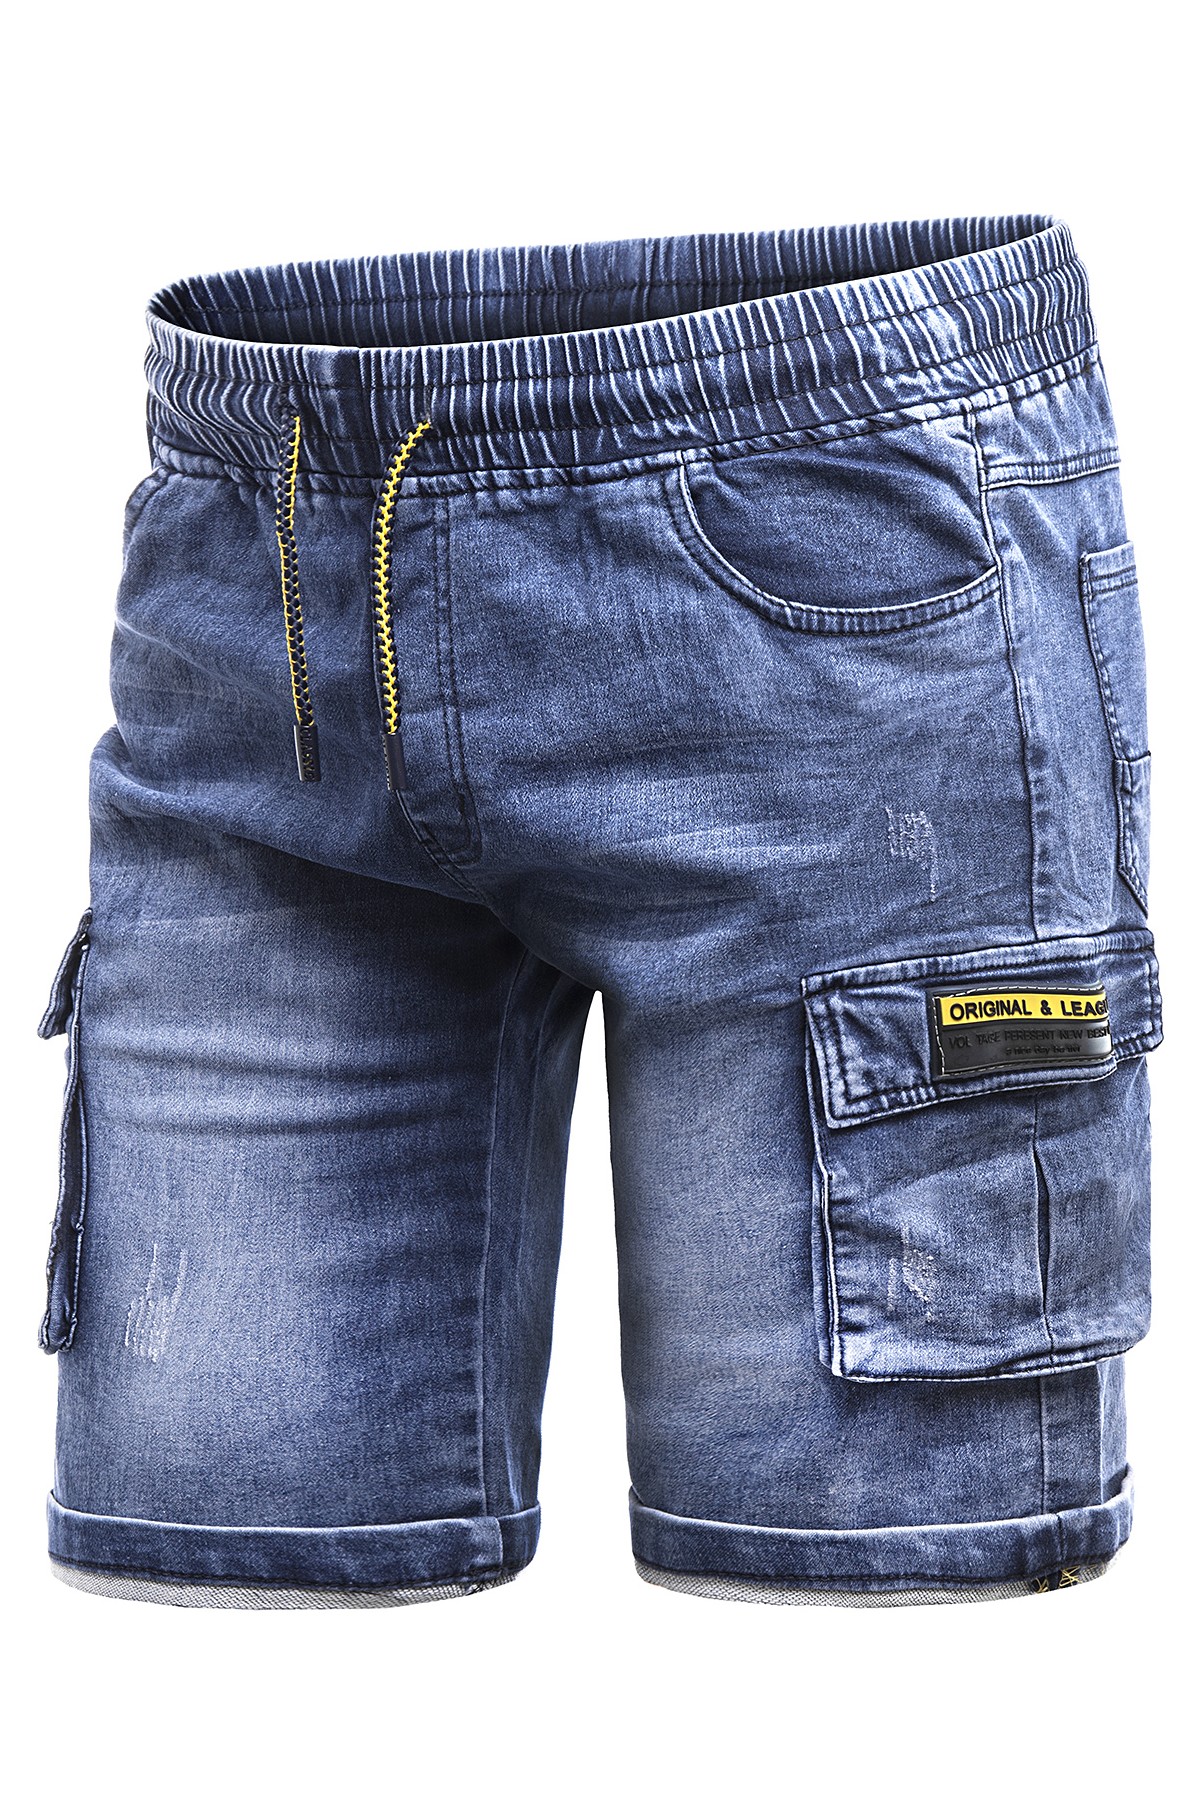 Spodenki męskie HY669 - niebieski jeans